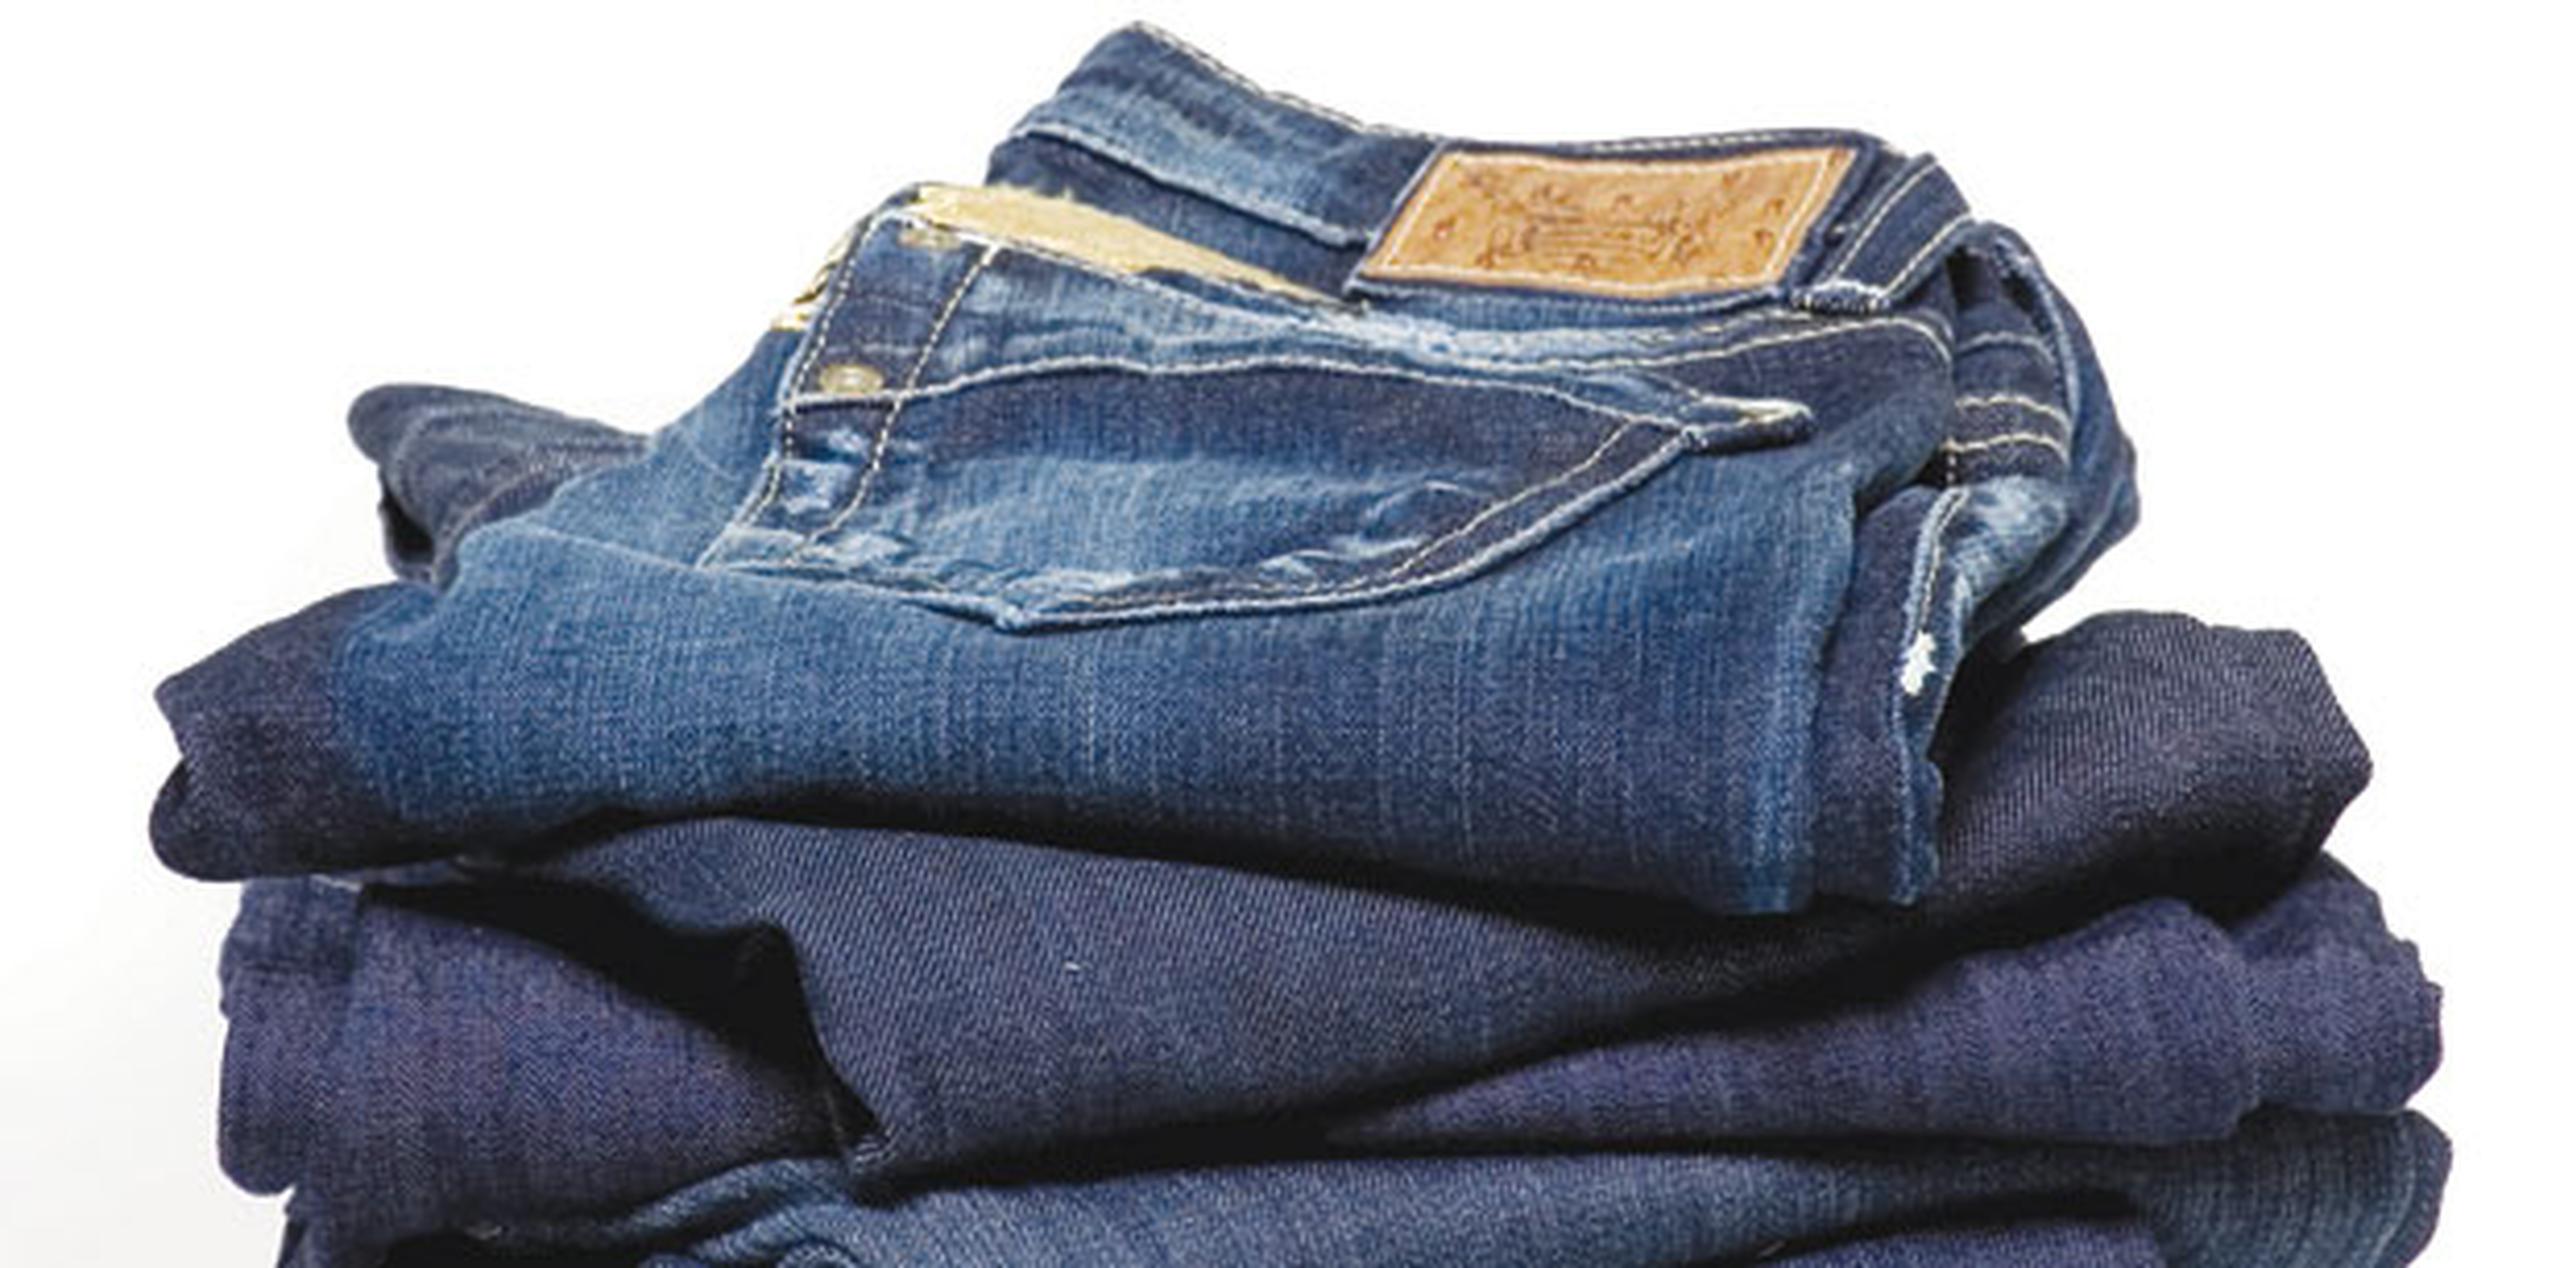 Las ventas de los emblemáticos pantalones tejanos azules bajaron 6% en el último año después de décadas de crecimiento casi constante. (Archivo)